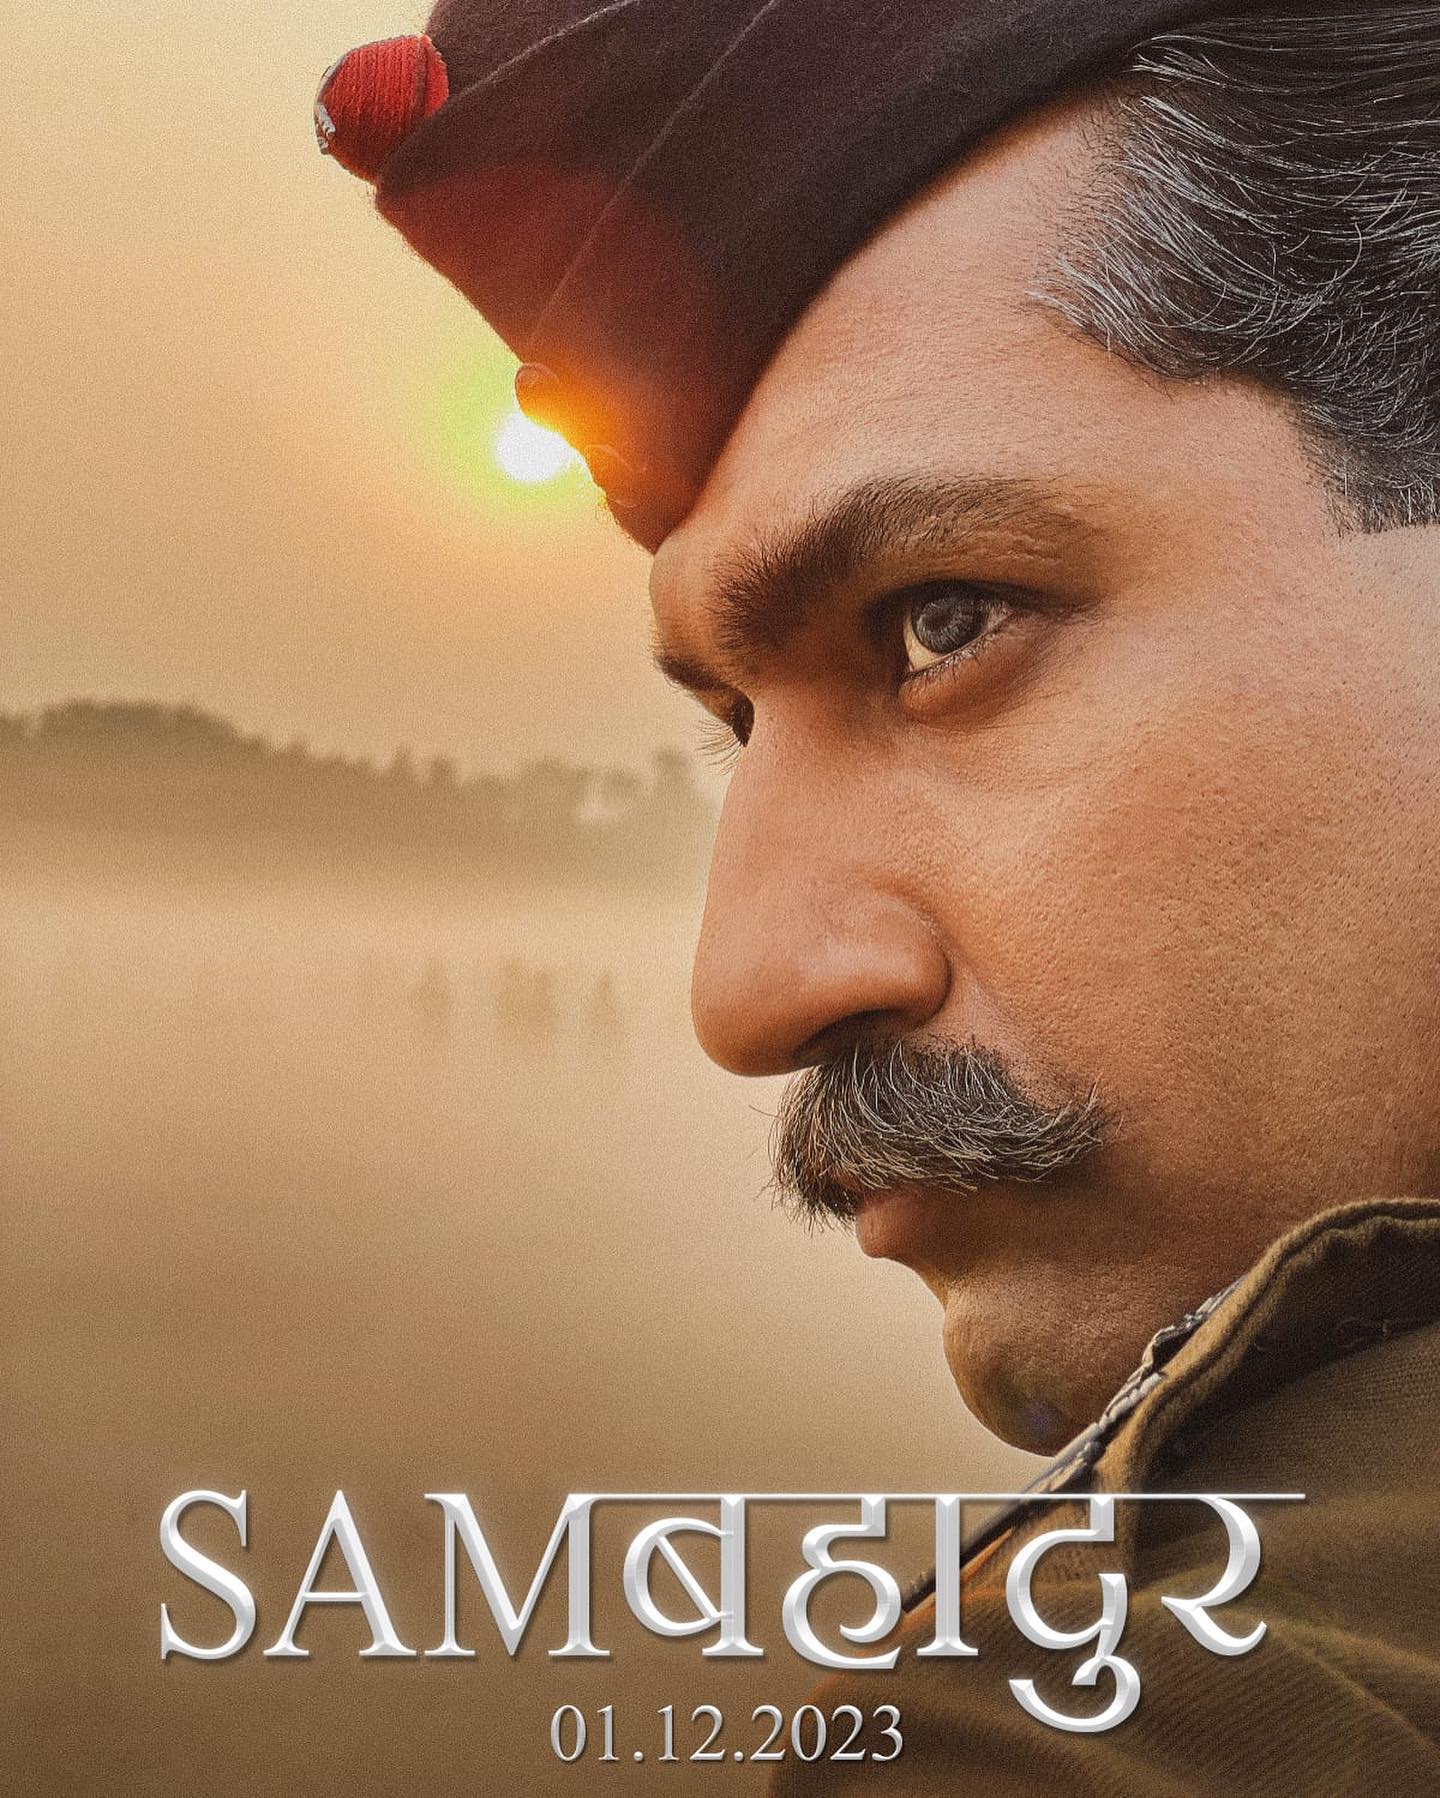 Sam Bahadur poster